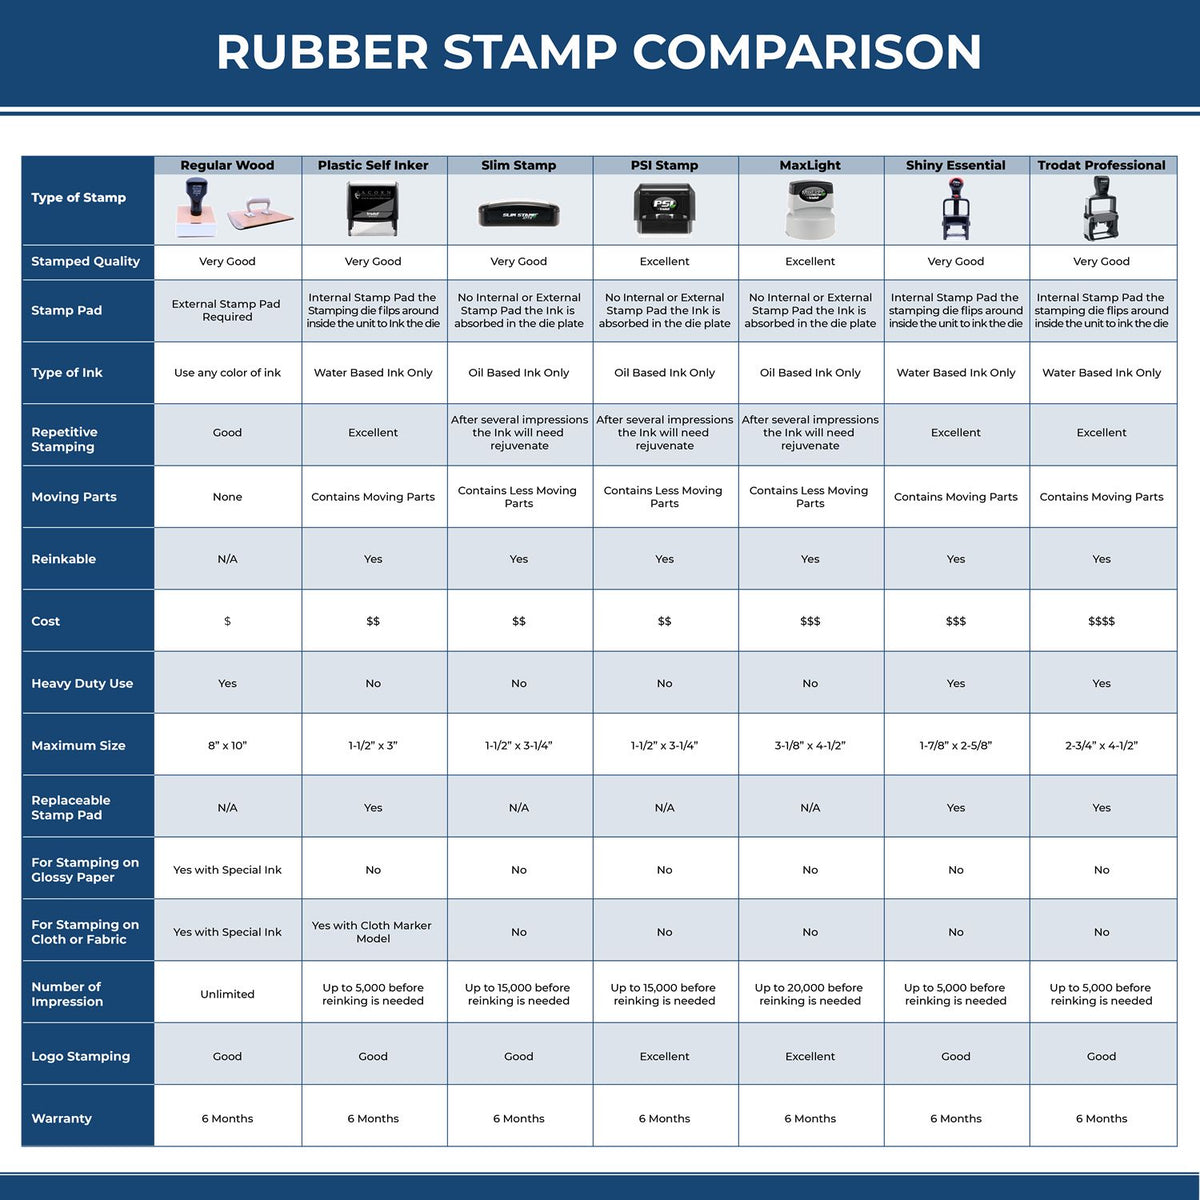 Large Super Homework Rubber Stamp 4685R Rubber Stamp Comparison